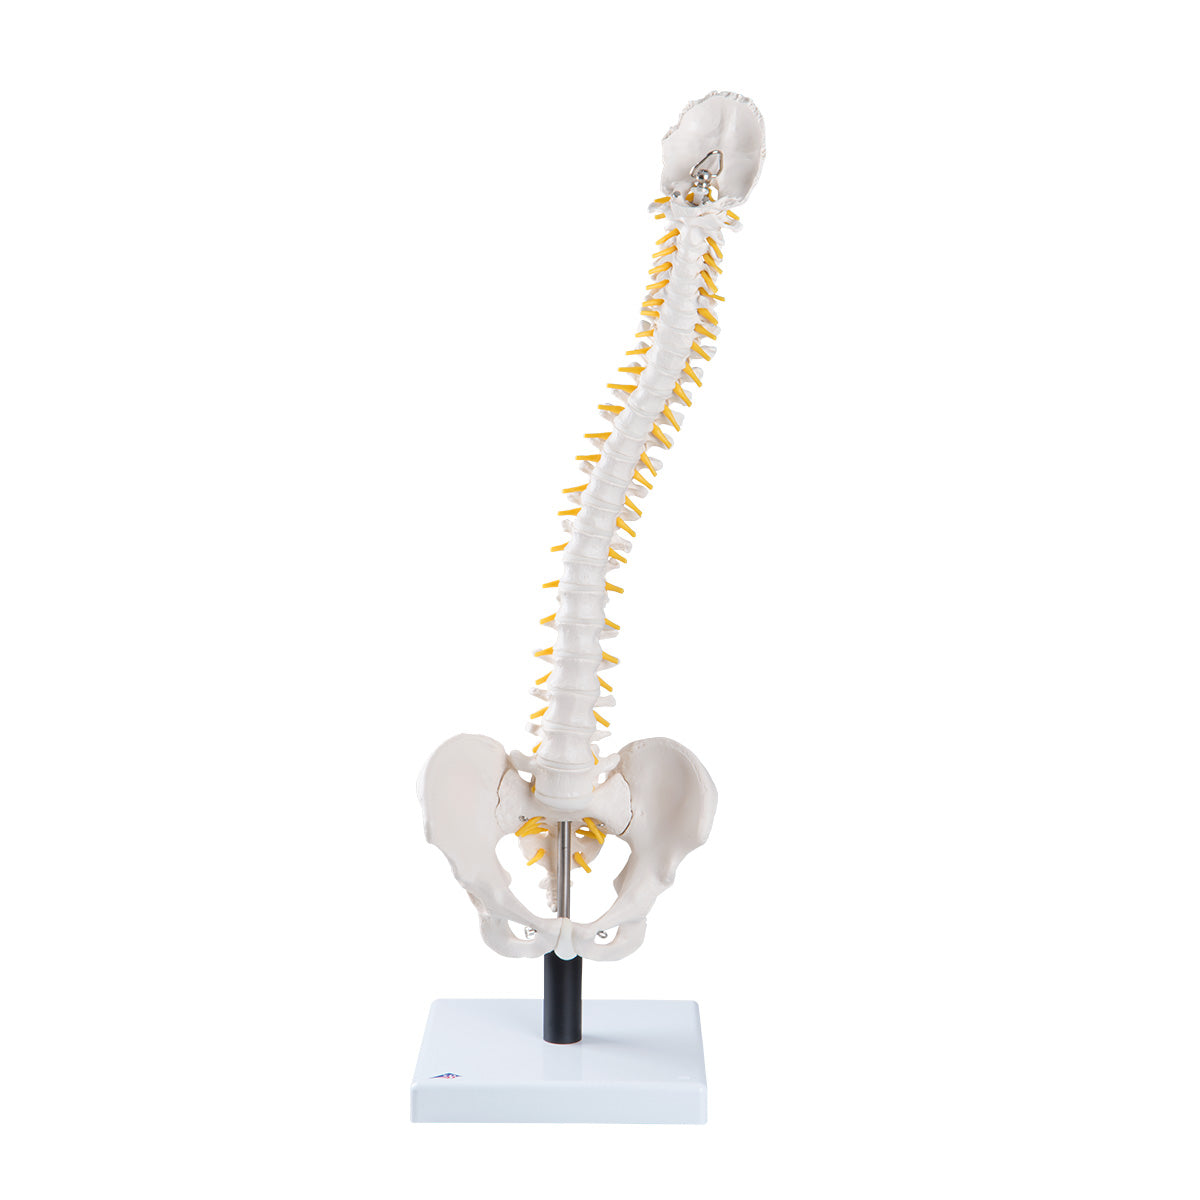 Fleksibel model af rygsøjlen med ekstrabløde diskus, nerver m.m. præsenteret på stander